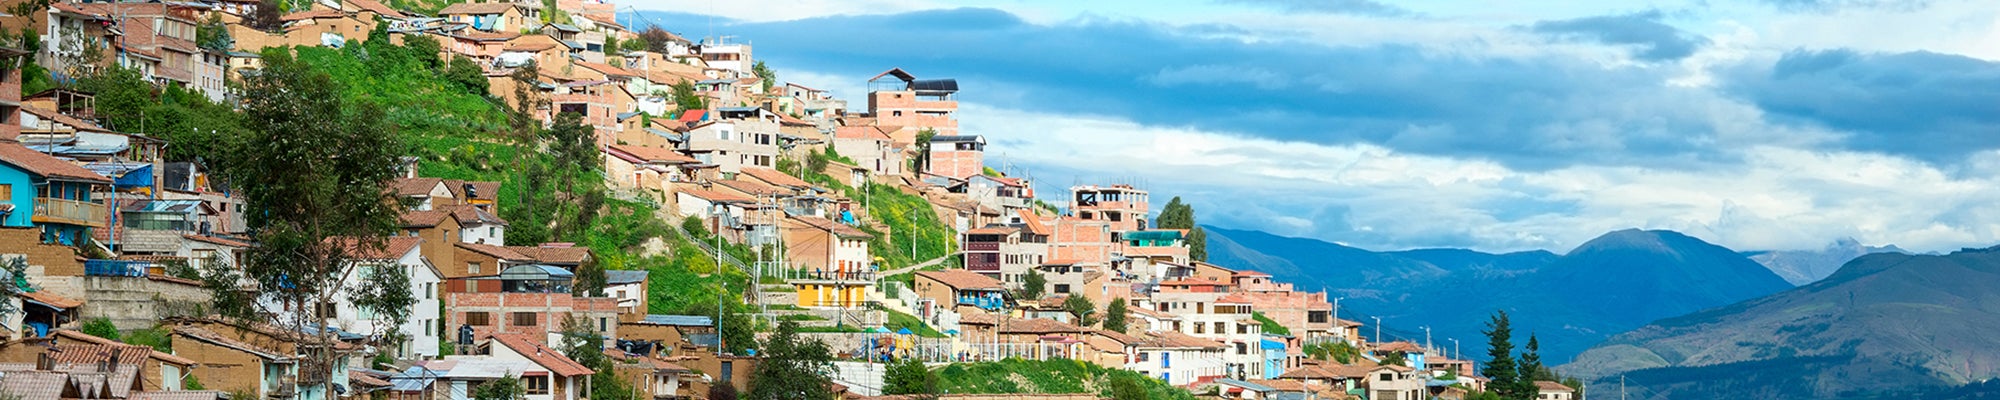 Cityscape of Cusco, Peru